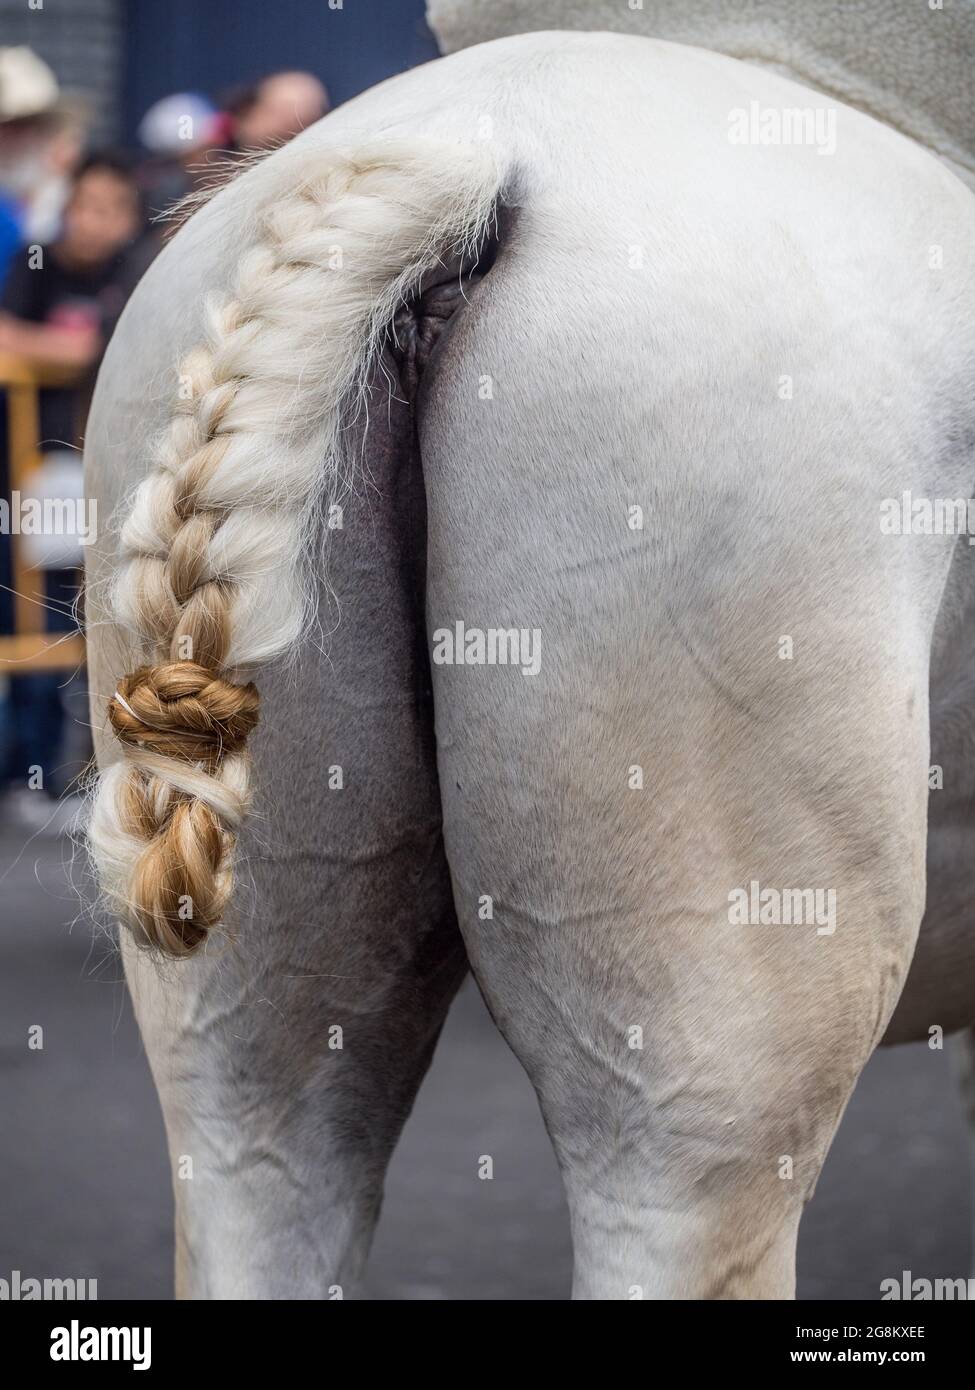 Ausgefallener geflochtener Schwanz eines weißen Pferdes (Equus ferus) bei der jährlichen Pferdeparade (Tope) in San Jose, Costa Rica. Stockfoto